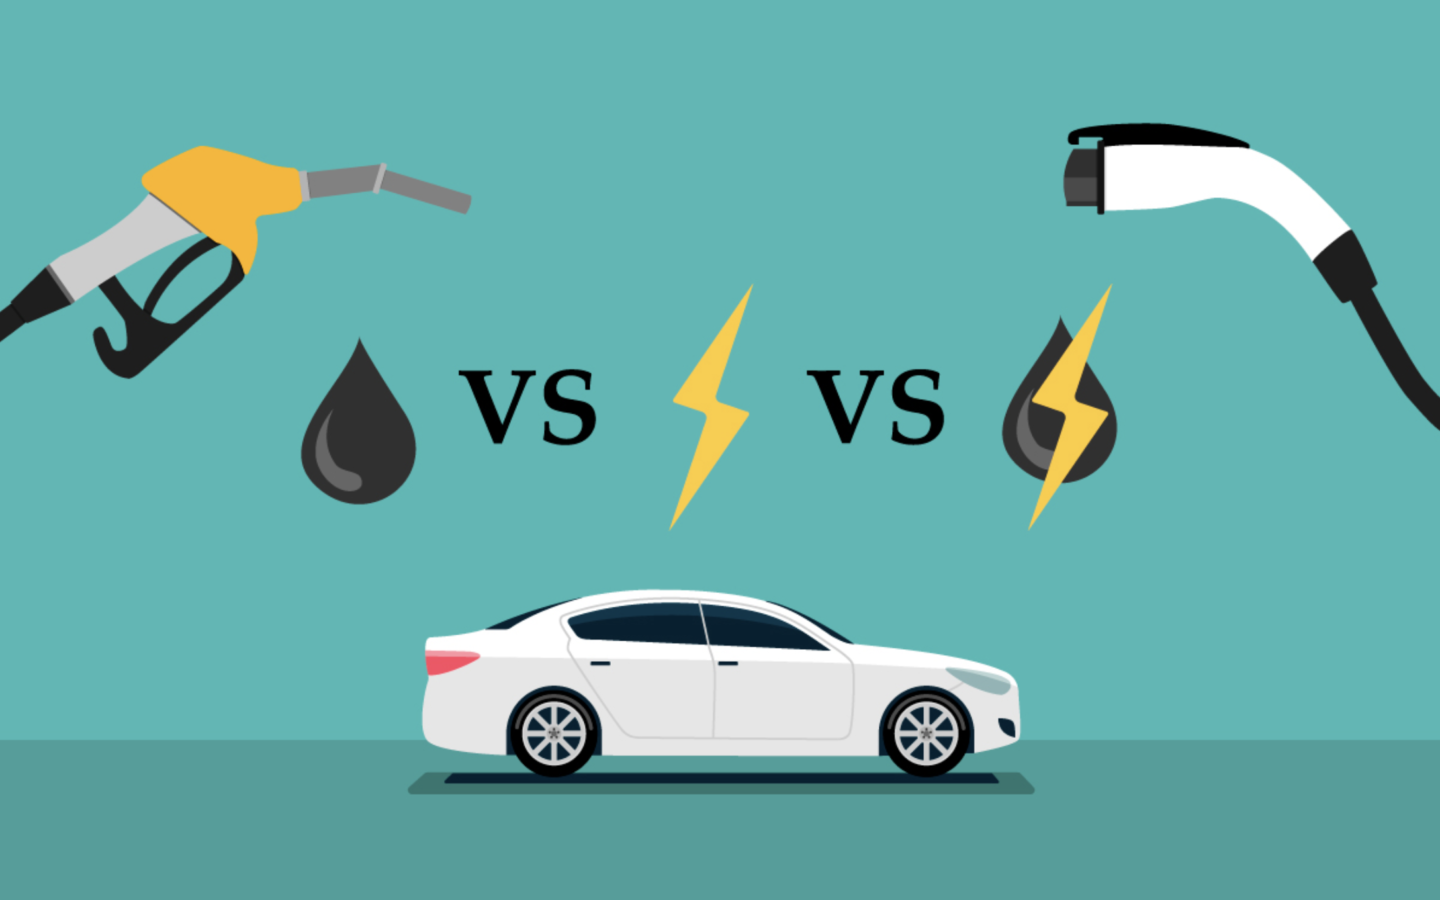 أيهما أسرع، السيارات العاملة بالوقود أم السيارات الكهربائية؟